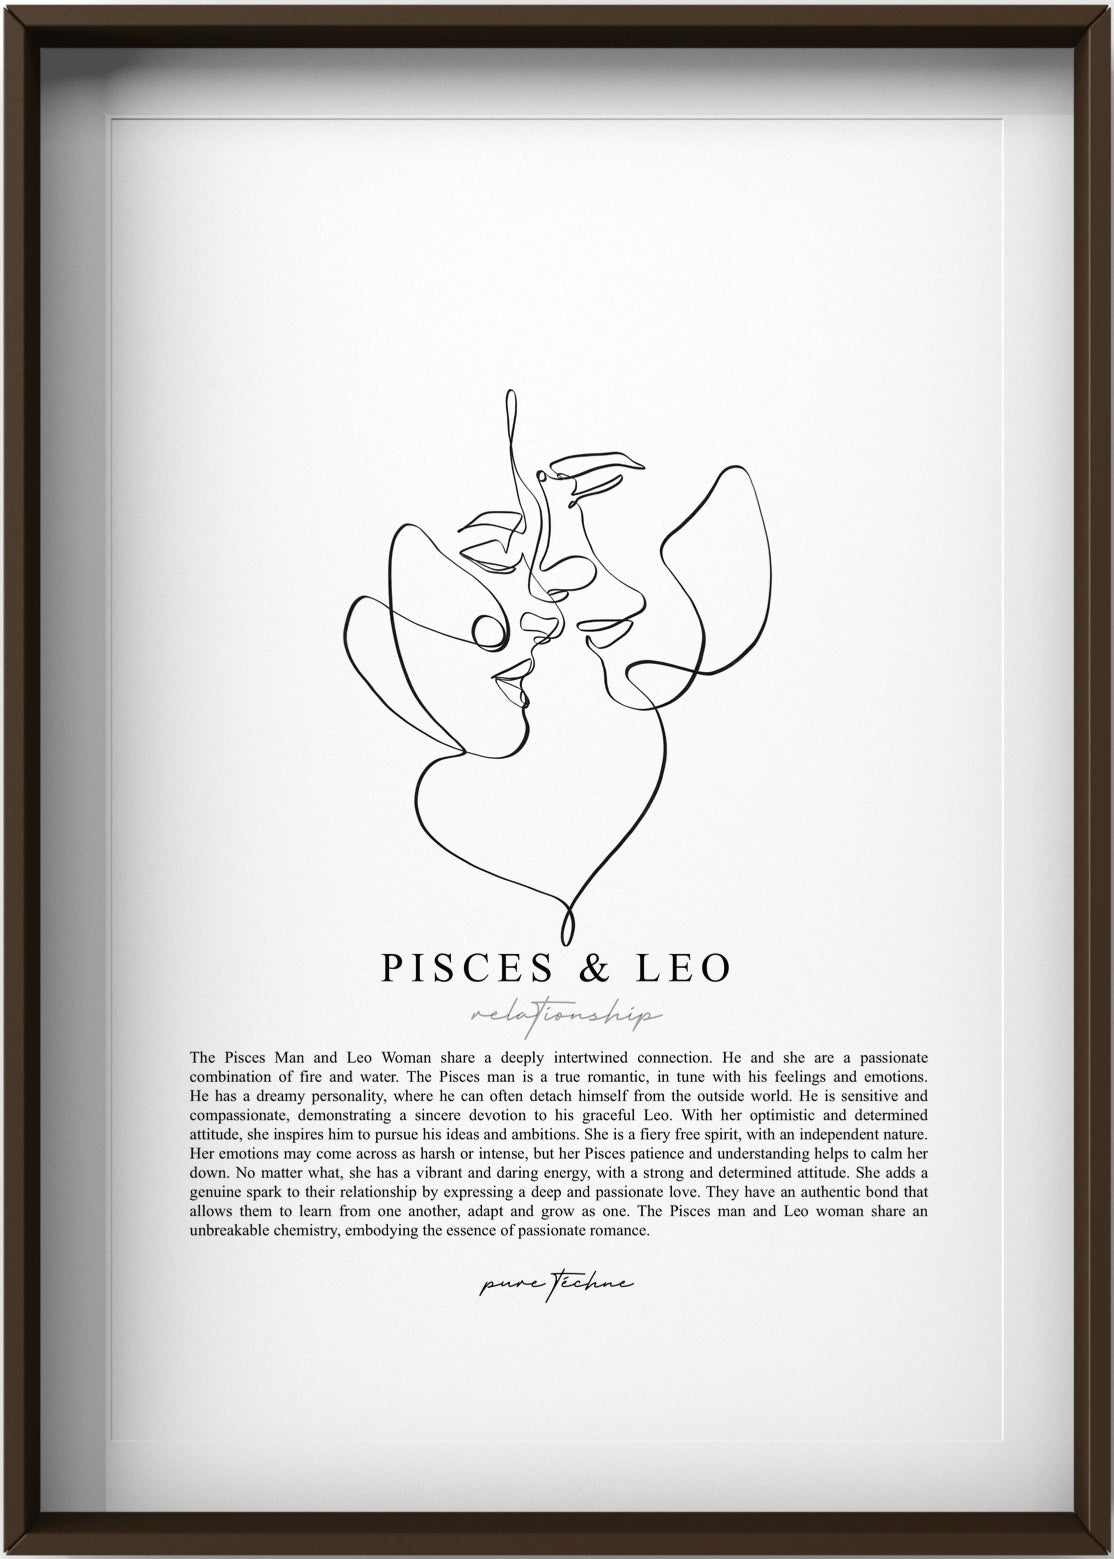 Pisces Man & Leo Woman